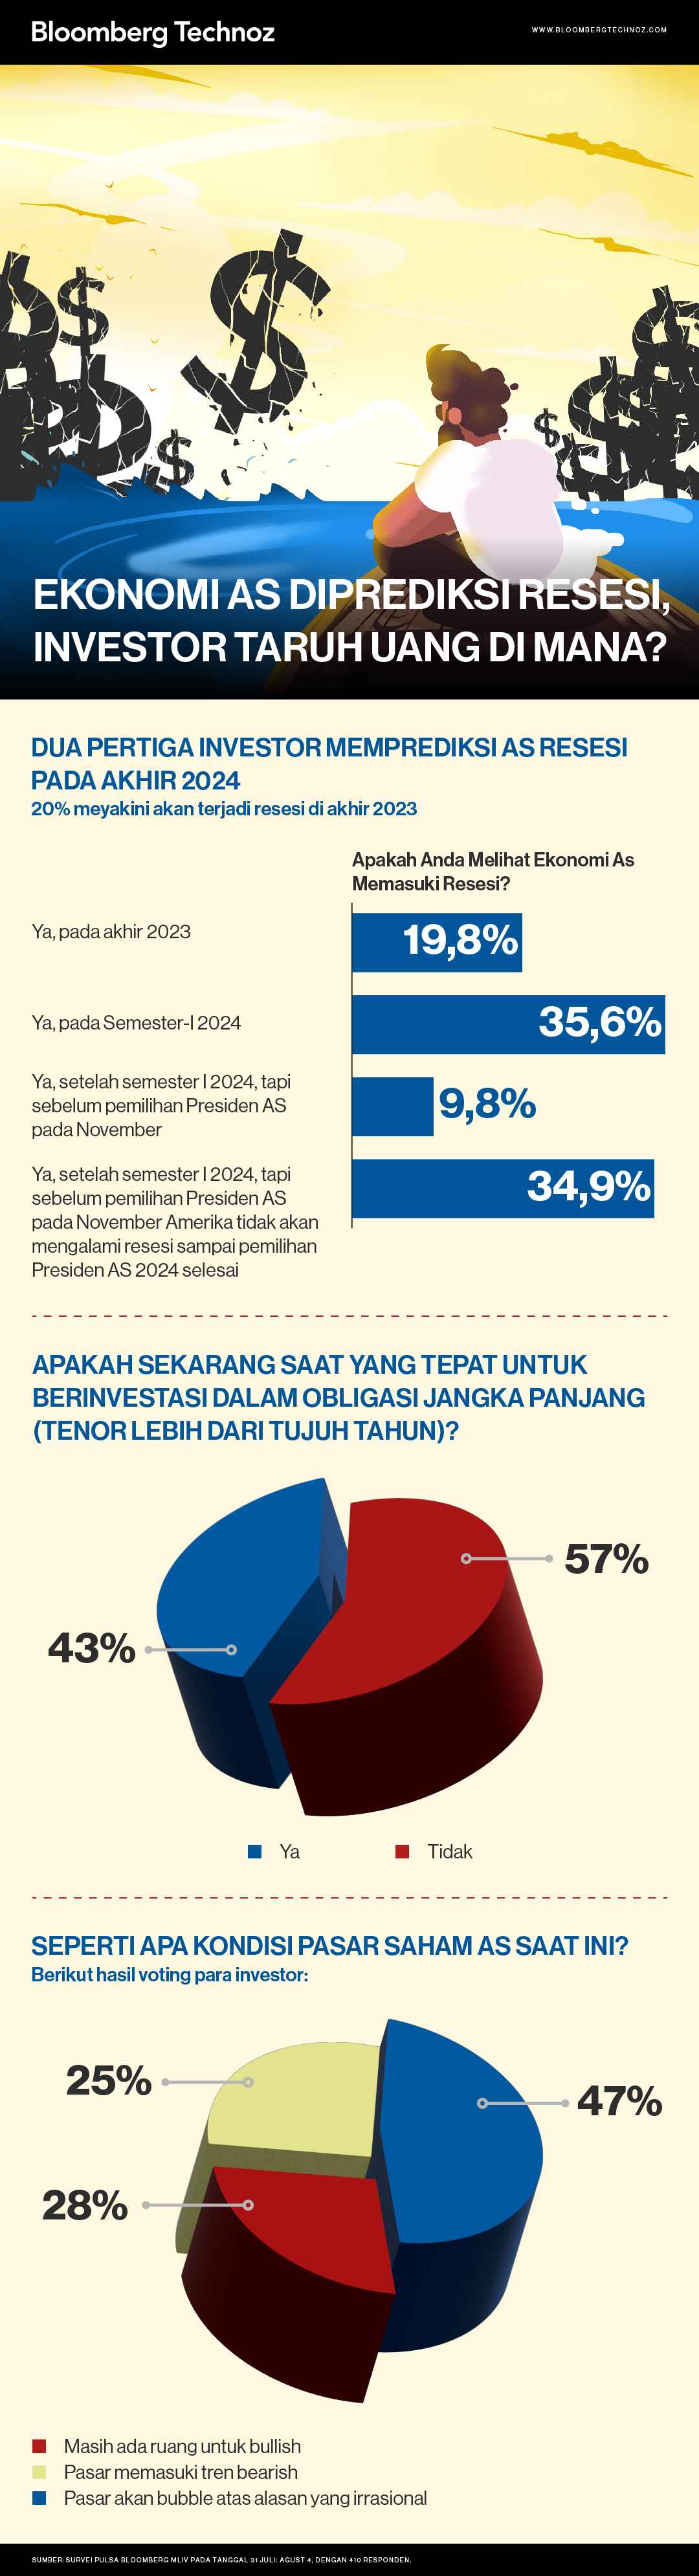 Ekonomi AS Diprediksi Resesi, Investor Taruh Uang di Mana? (Infografis/Bloomberg Technoz)